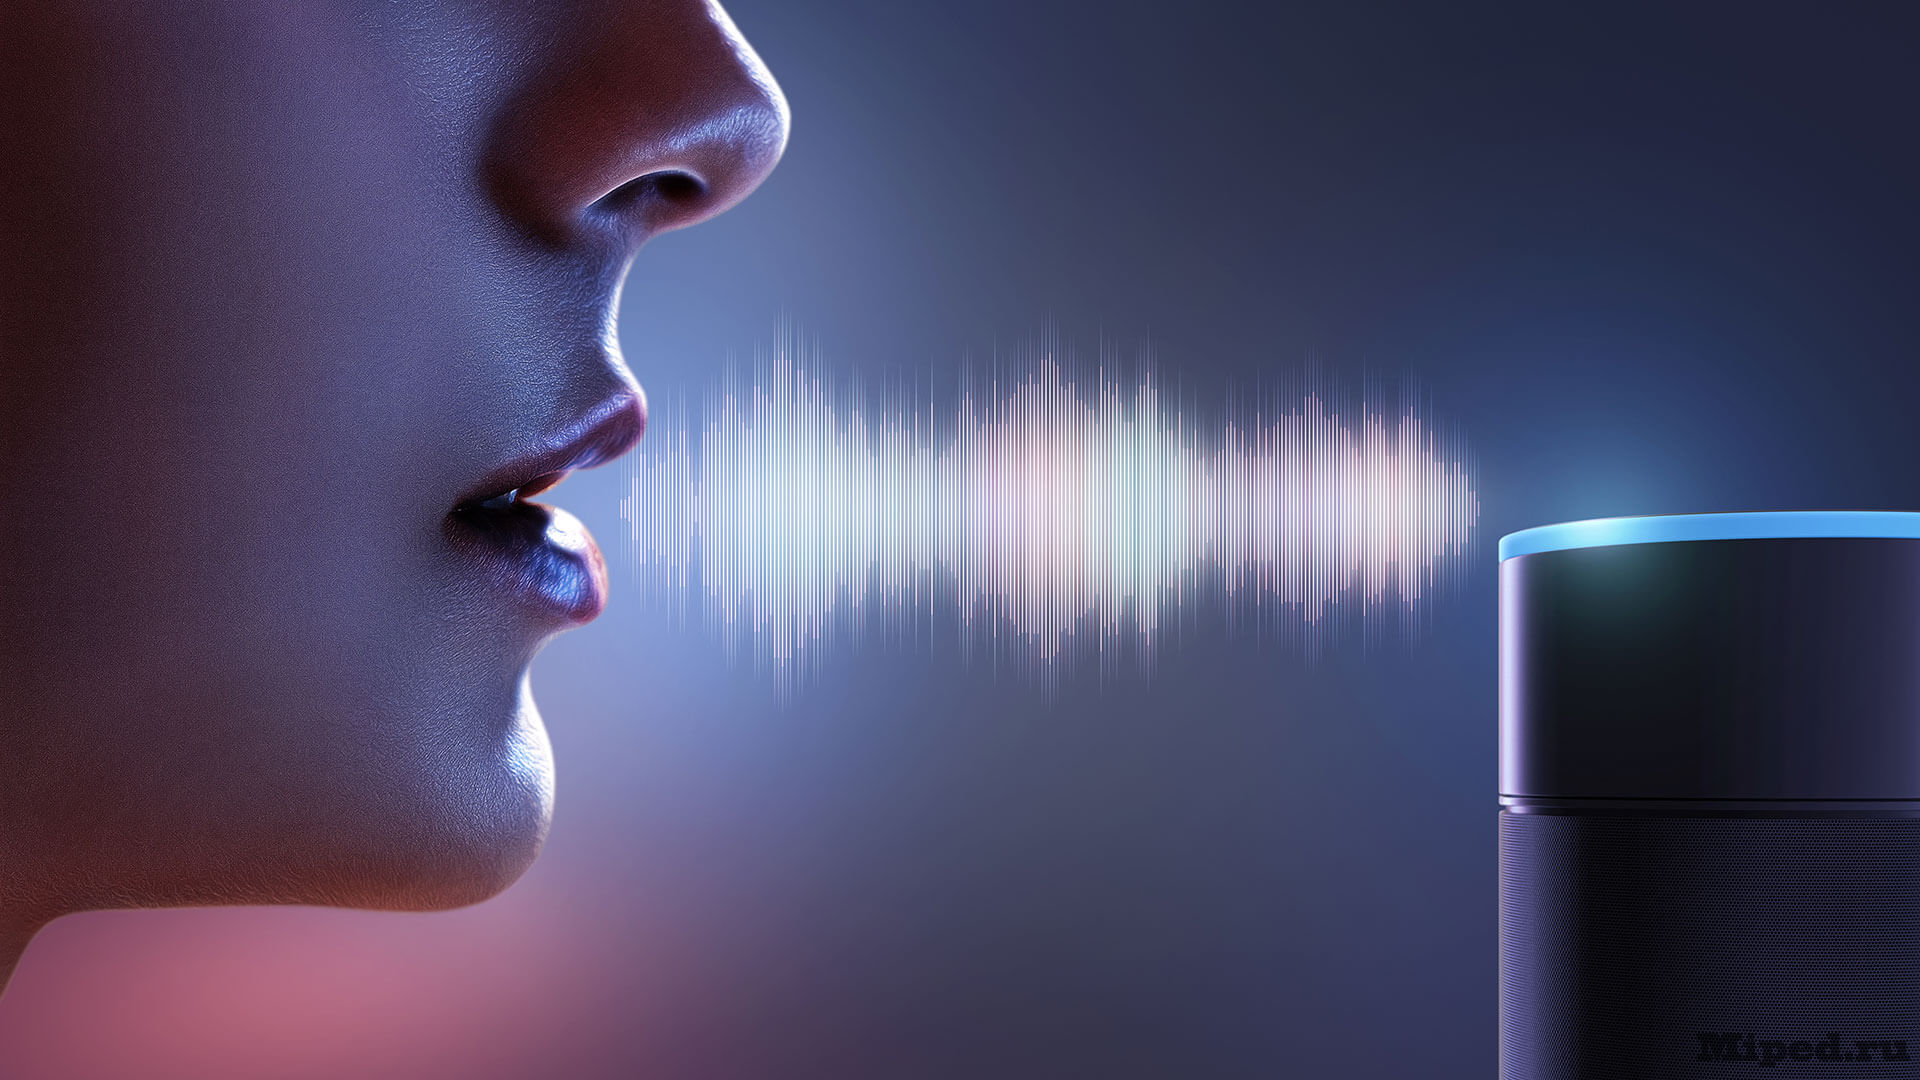 Звук голосового помощника. Идентификация по голосу. Распознавание речи. Биометрическая аутентификация по голосу. Биометрический сканер голоса.